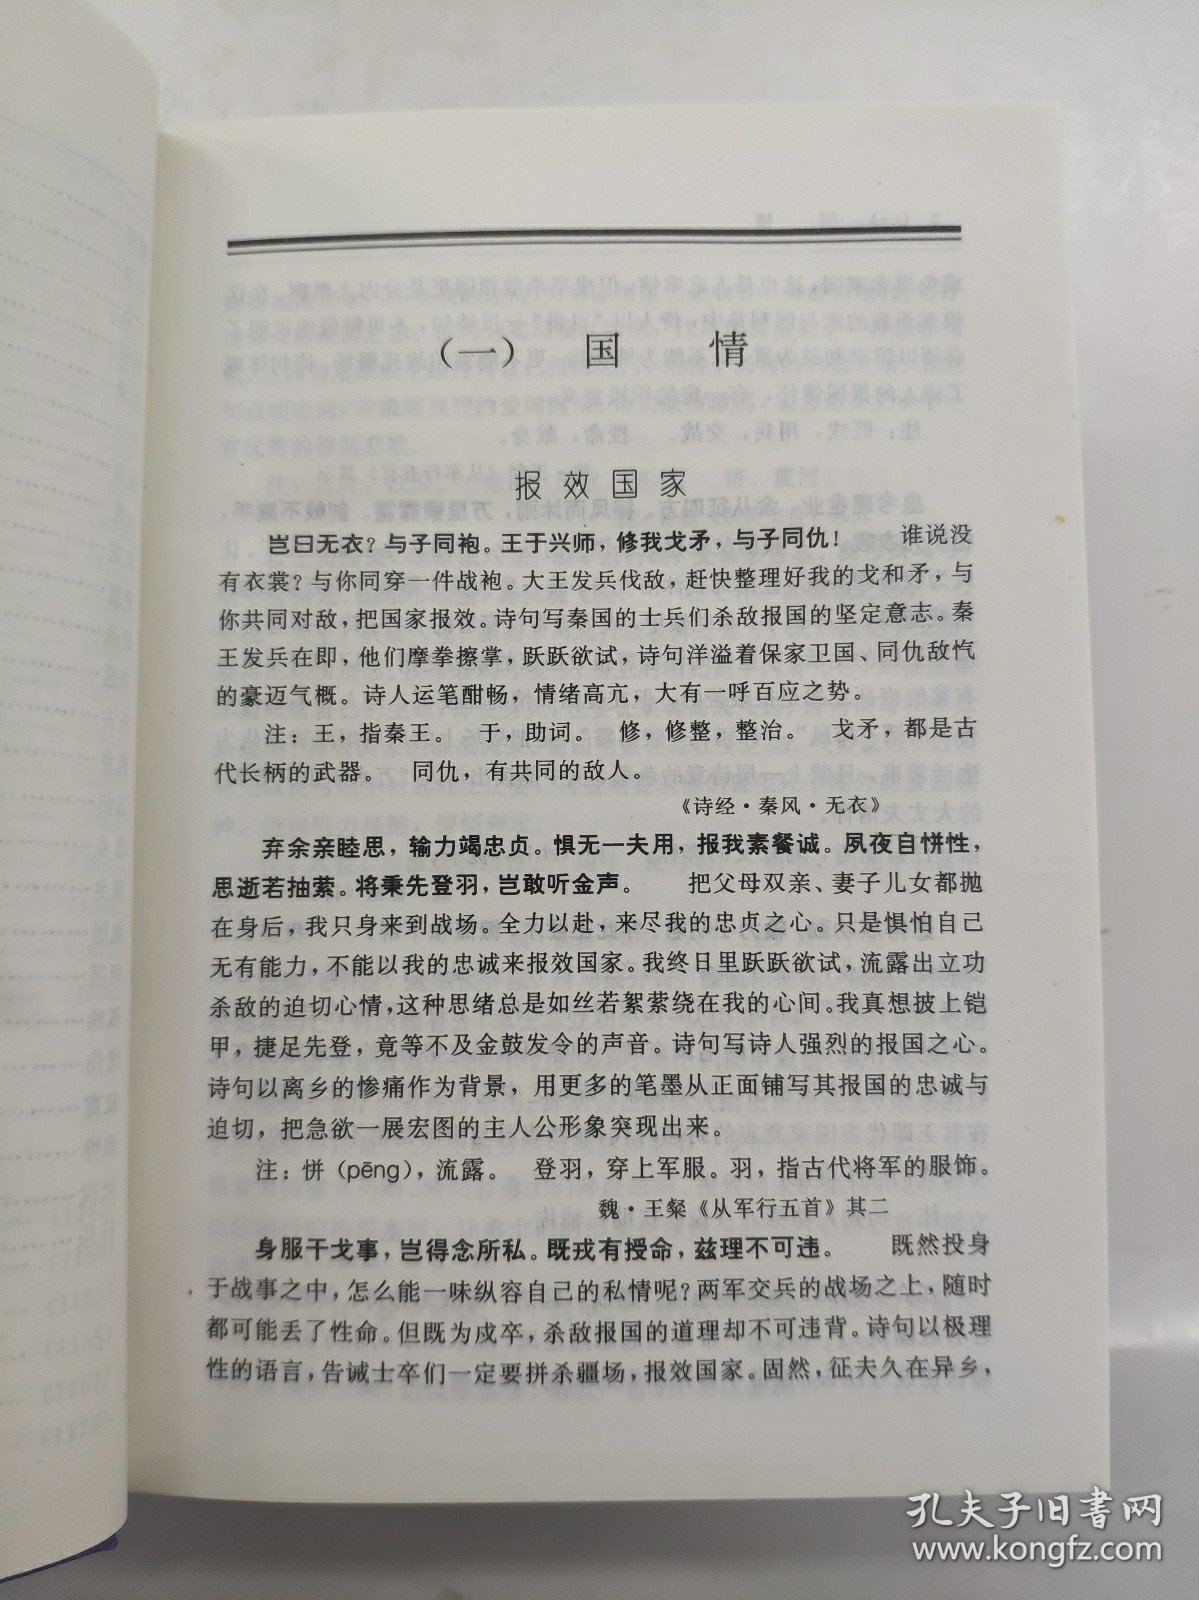 古诗情感描写类别辞典 辽海工具书系